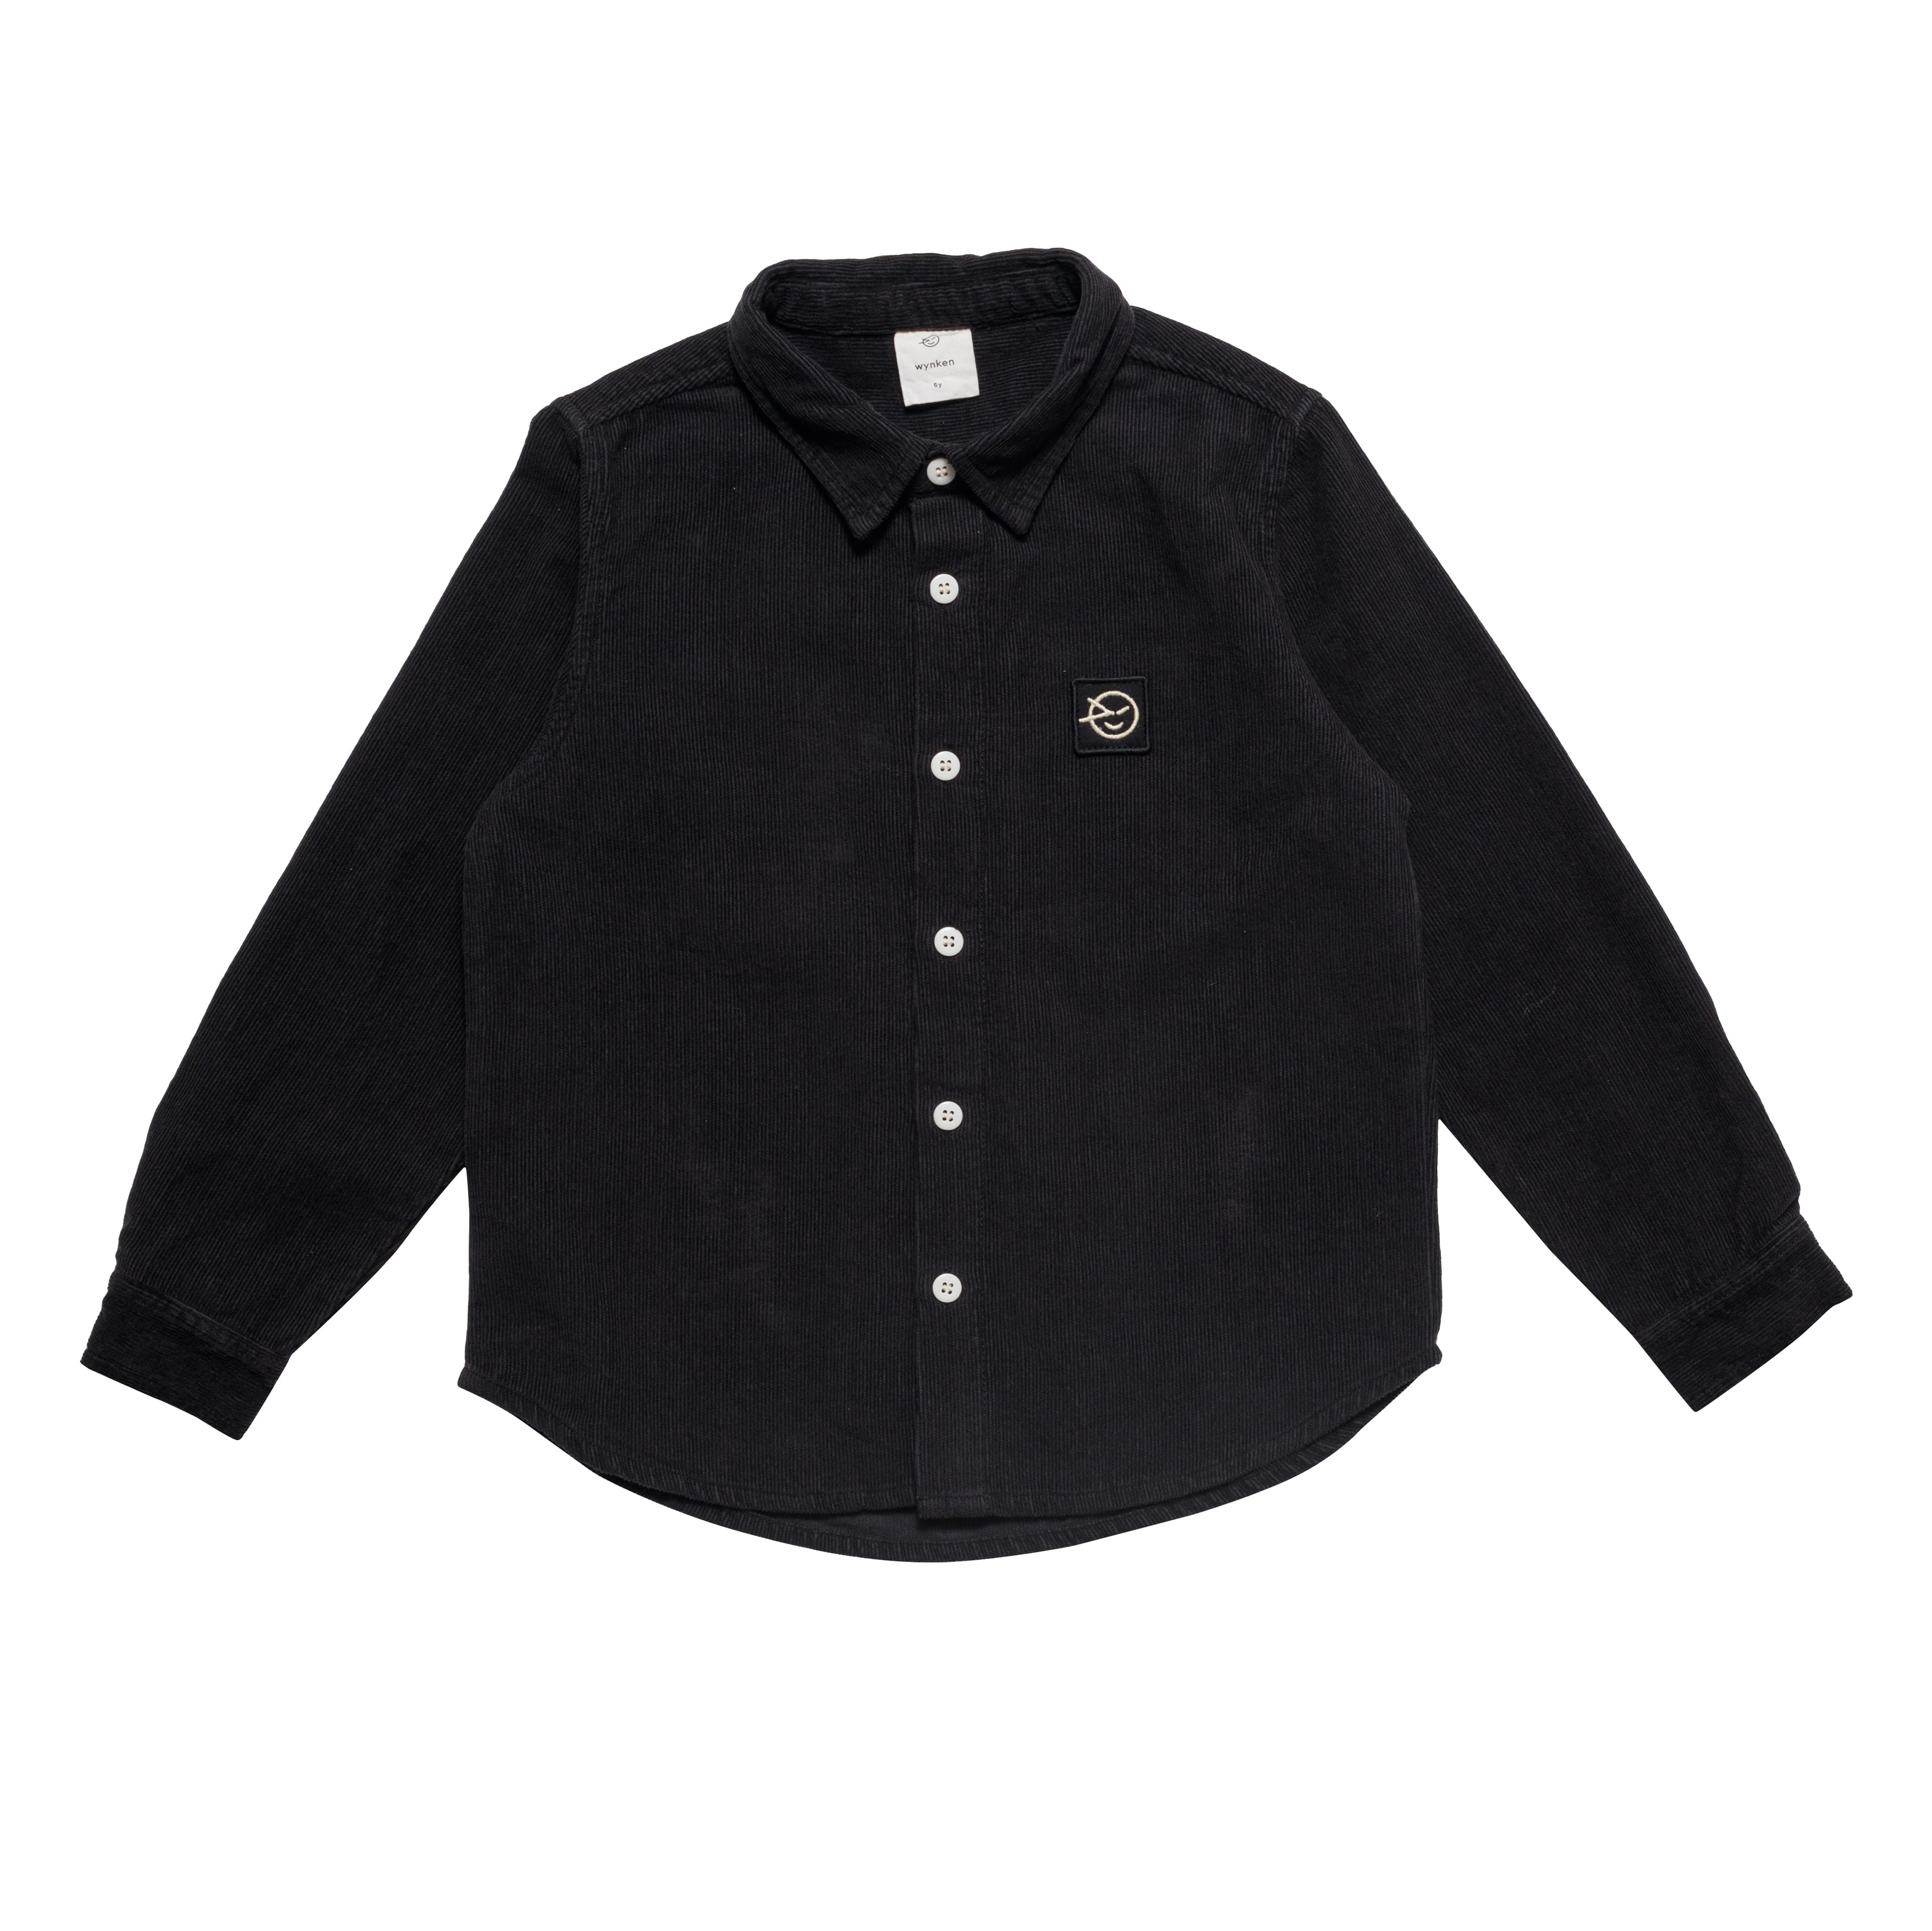 Boys & Girls Black Cotton Shirt